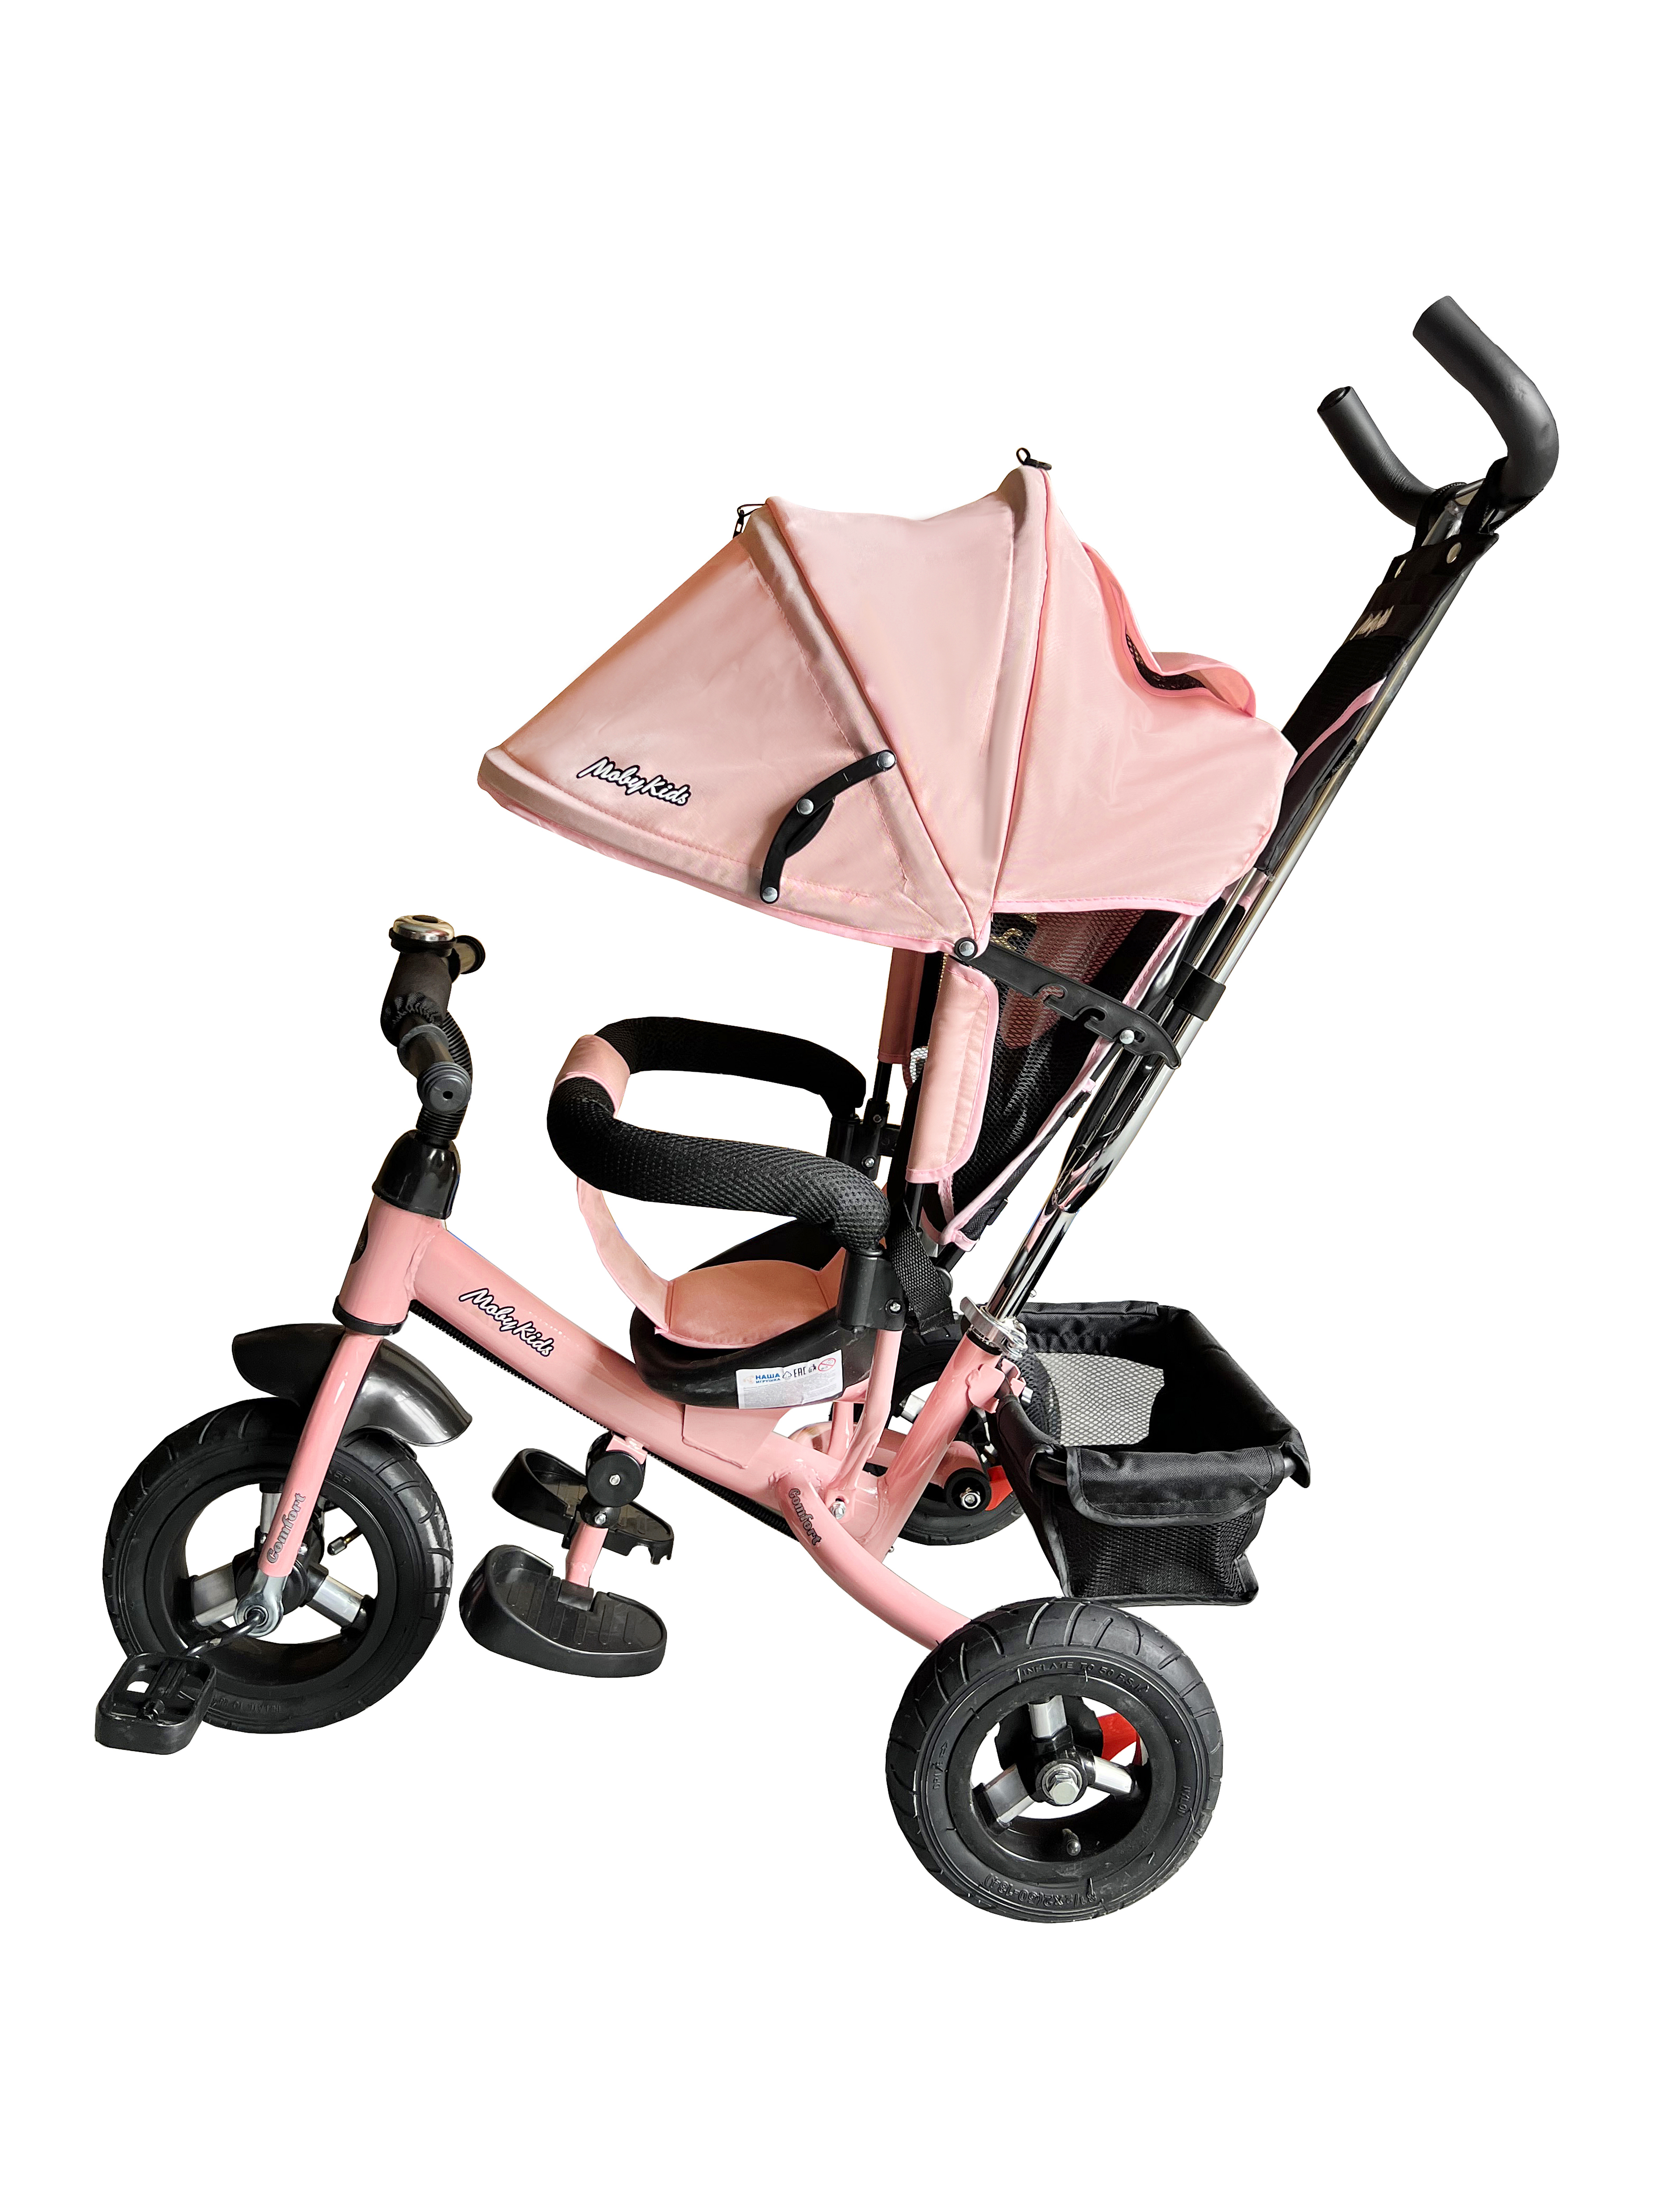 Велосипед трехколесный Moby Kids Comfort 10x8 AIR розовый - фото 5